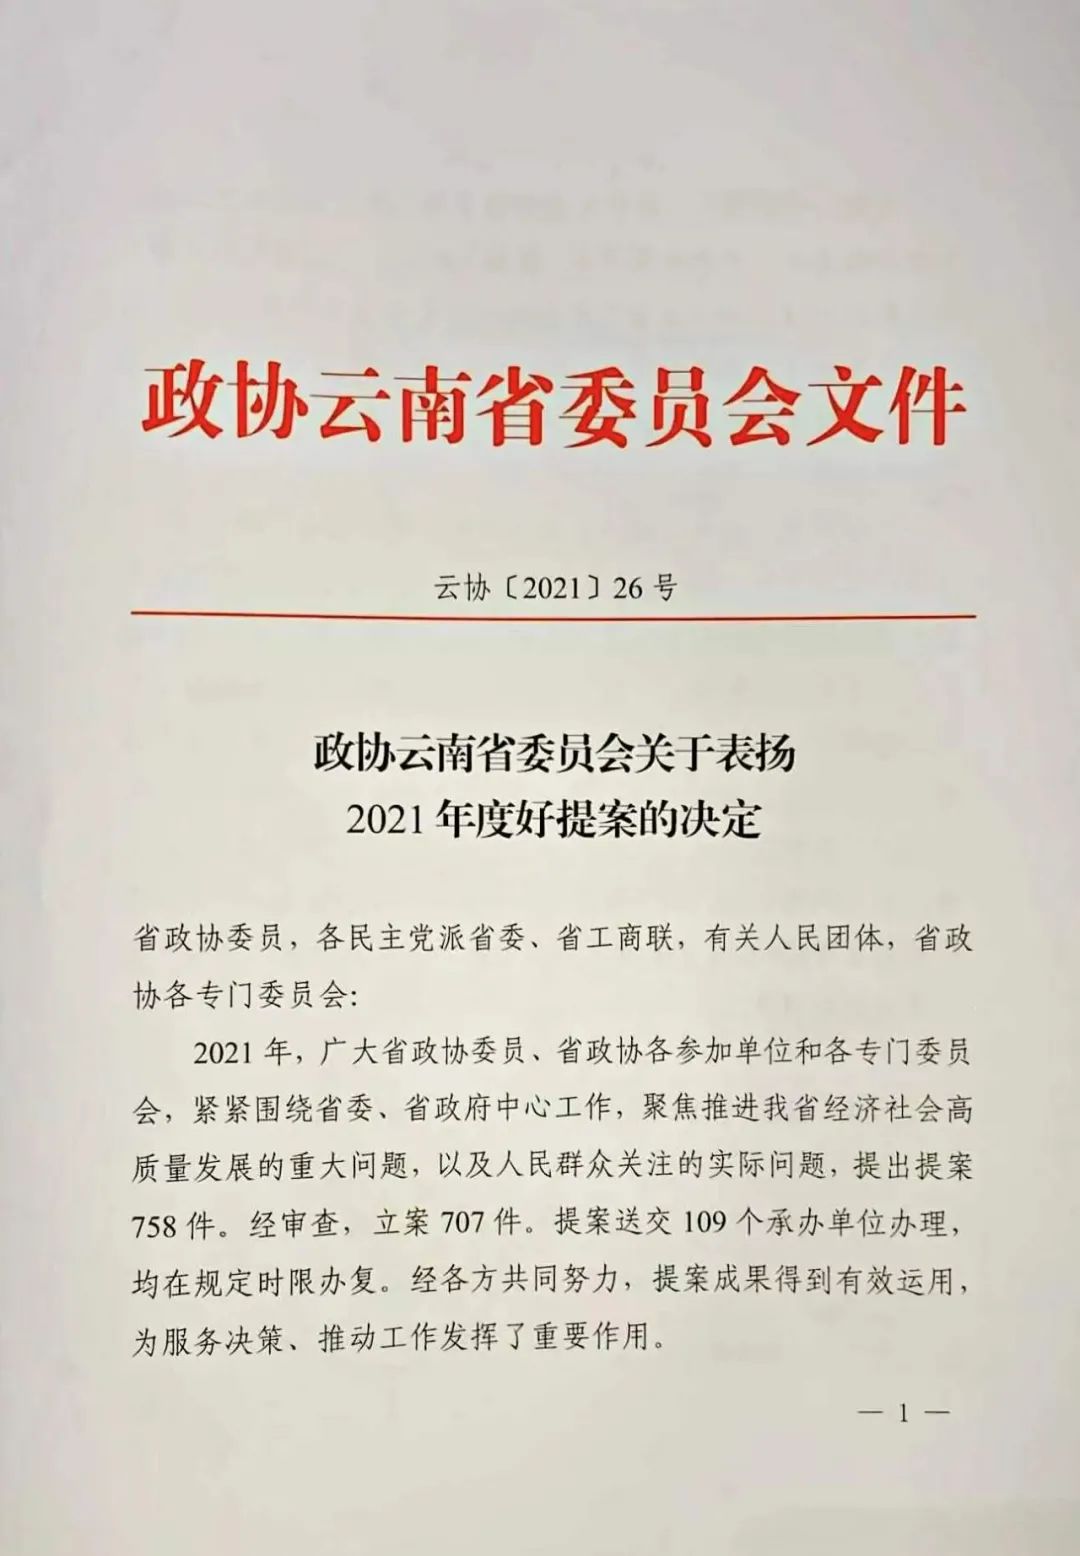 焦家良委员提案被评为“云南政协2021年度好提案”！